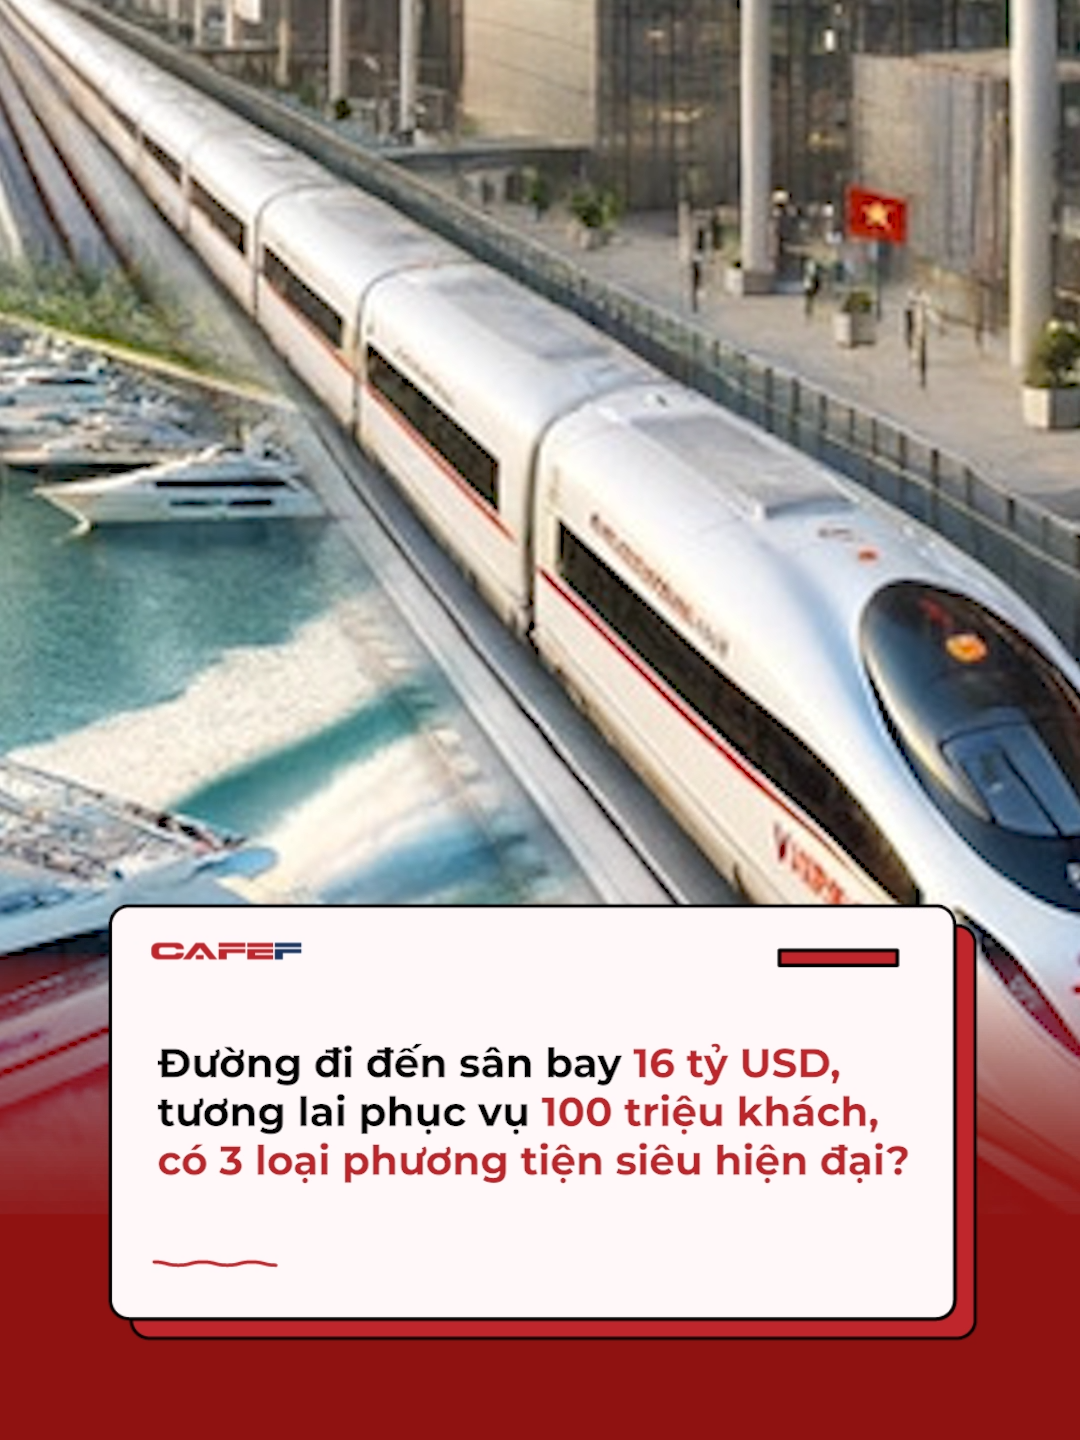 Hàng triệu hành khách từ TP.HCM có thể tới sân bay lớn nhất Việt Nam trong tương lai bằng cả đường bộ, đường sắt, và thậm chí là đường thủy. #Cafef #AMM